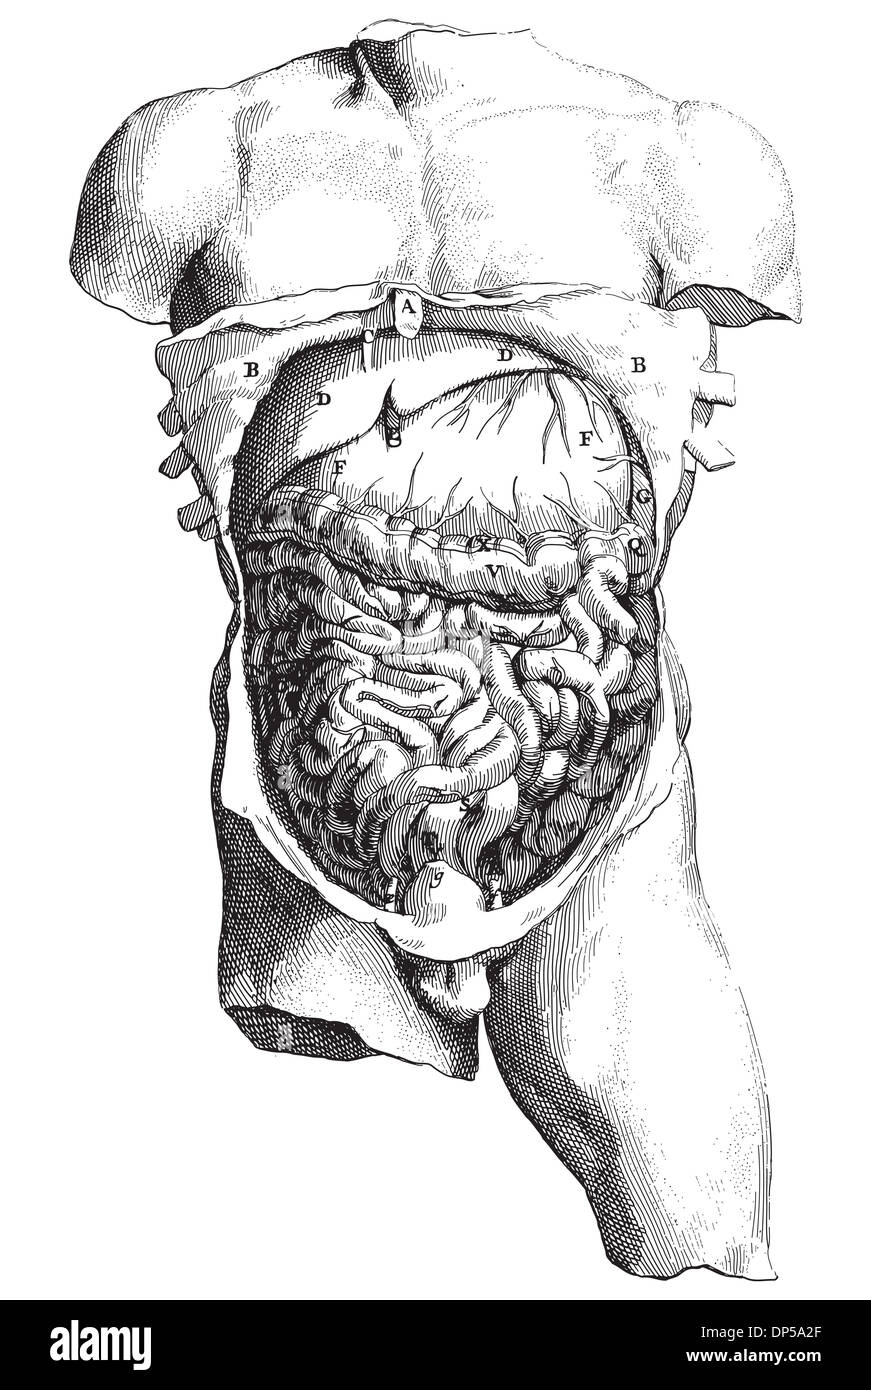 Alten Stil Vektor-Gravur des internen menschlichen Körpers Stockfoto